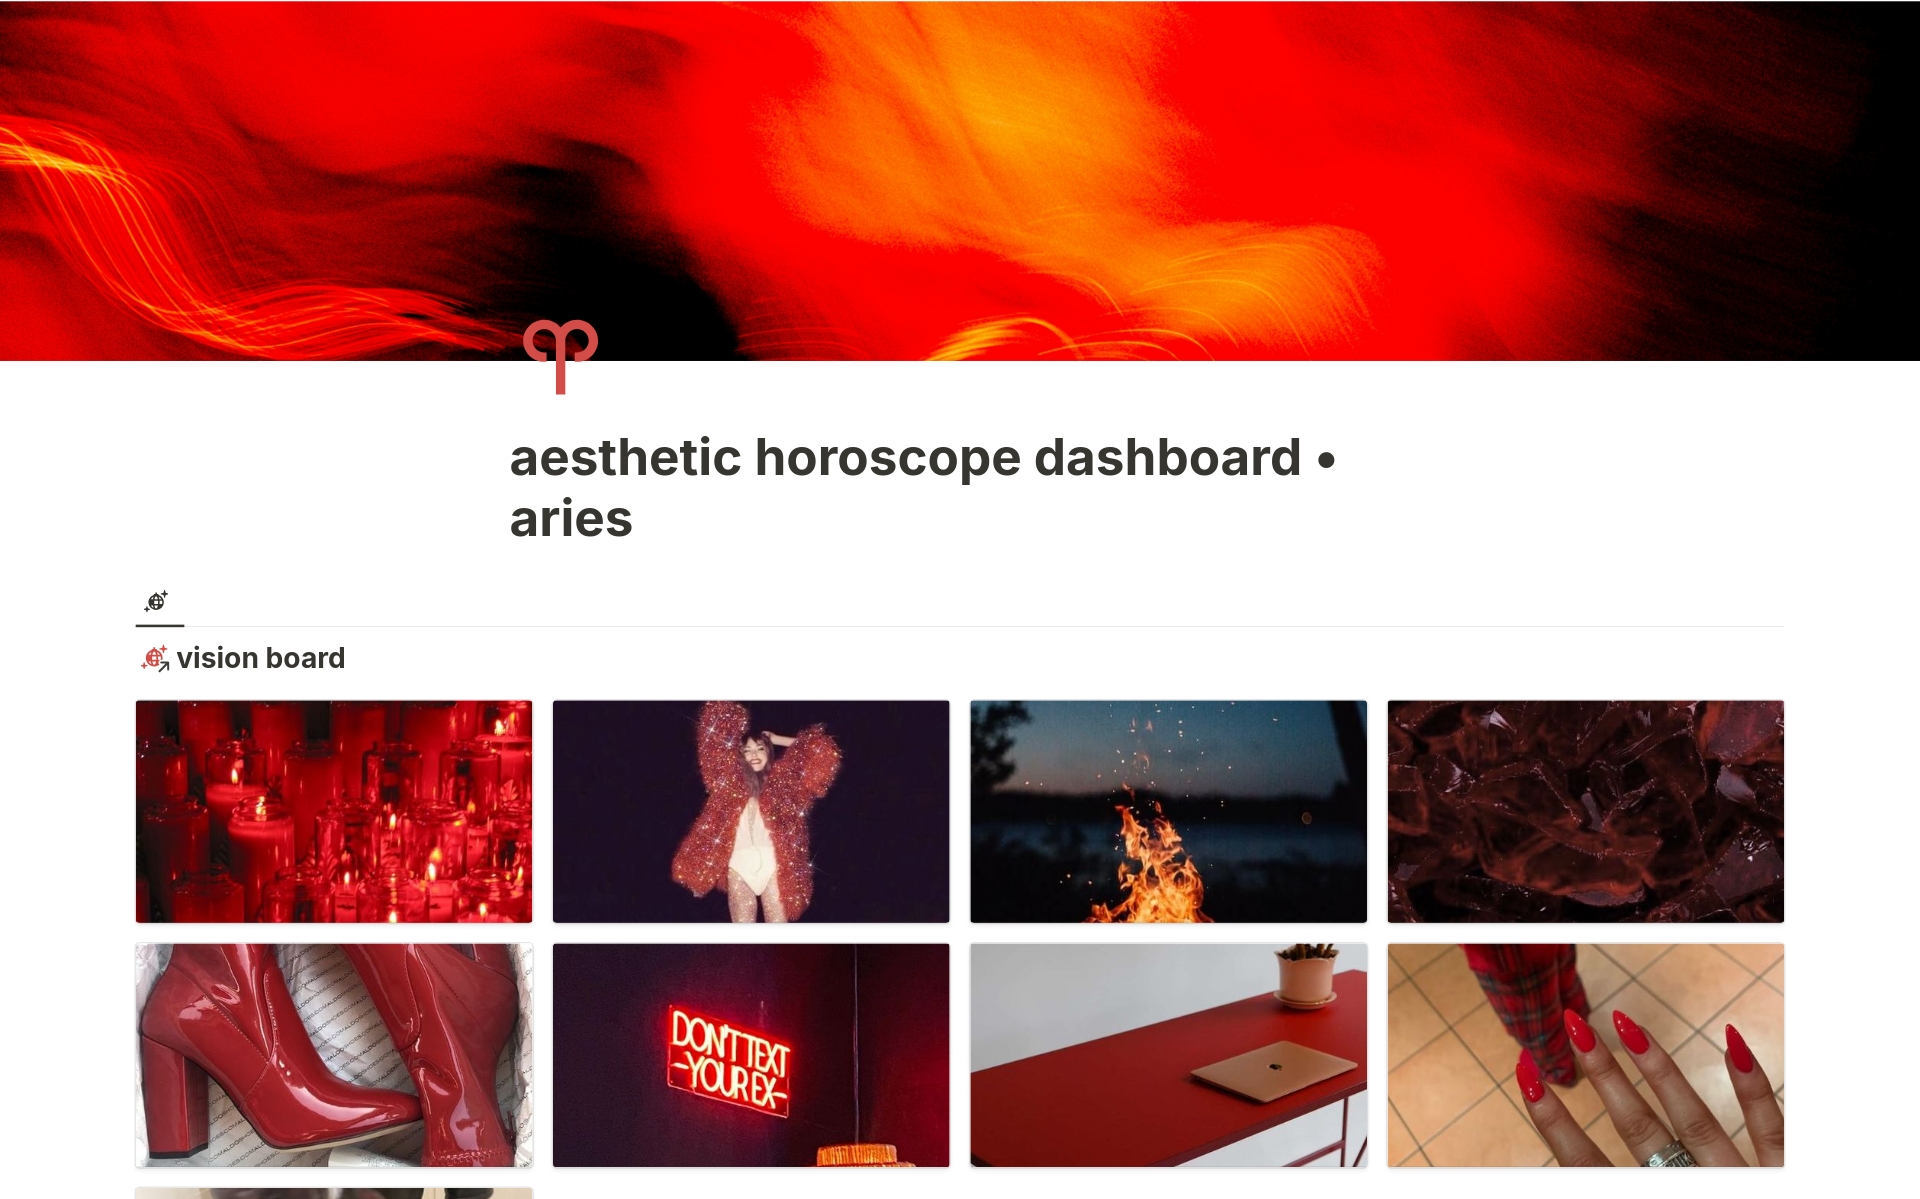 Uma prévia do modelo para aesthetic horoscope dashboard • aries